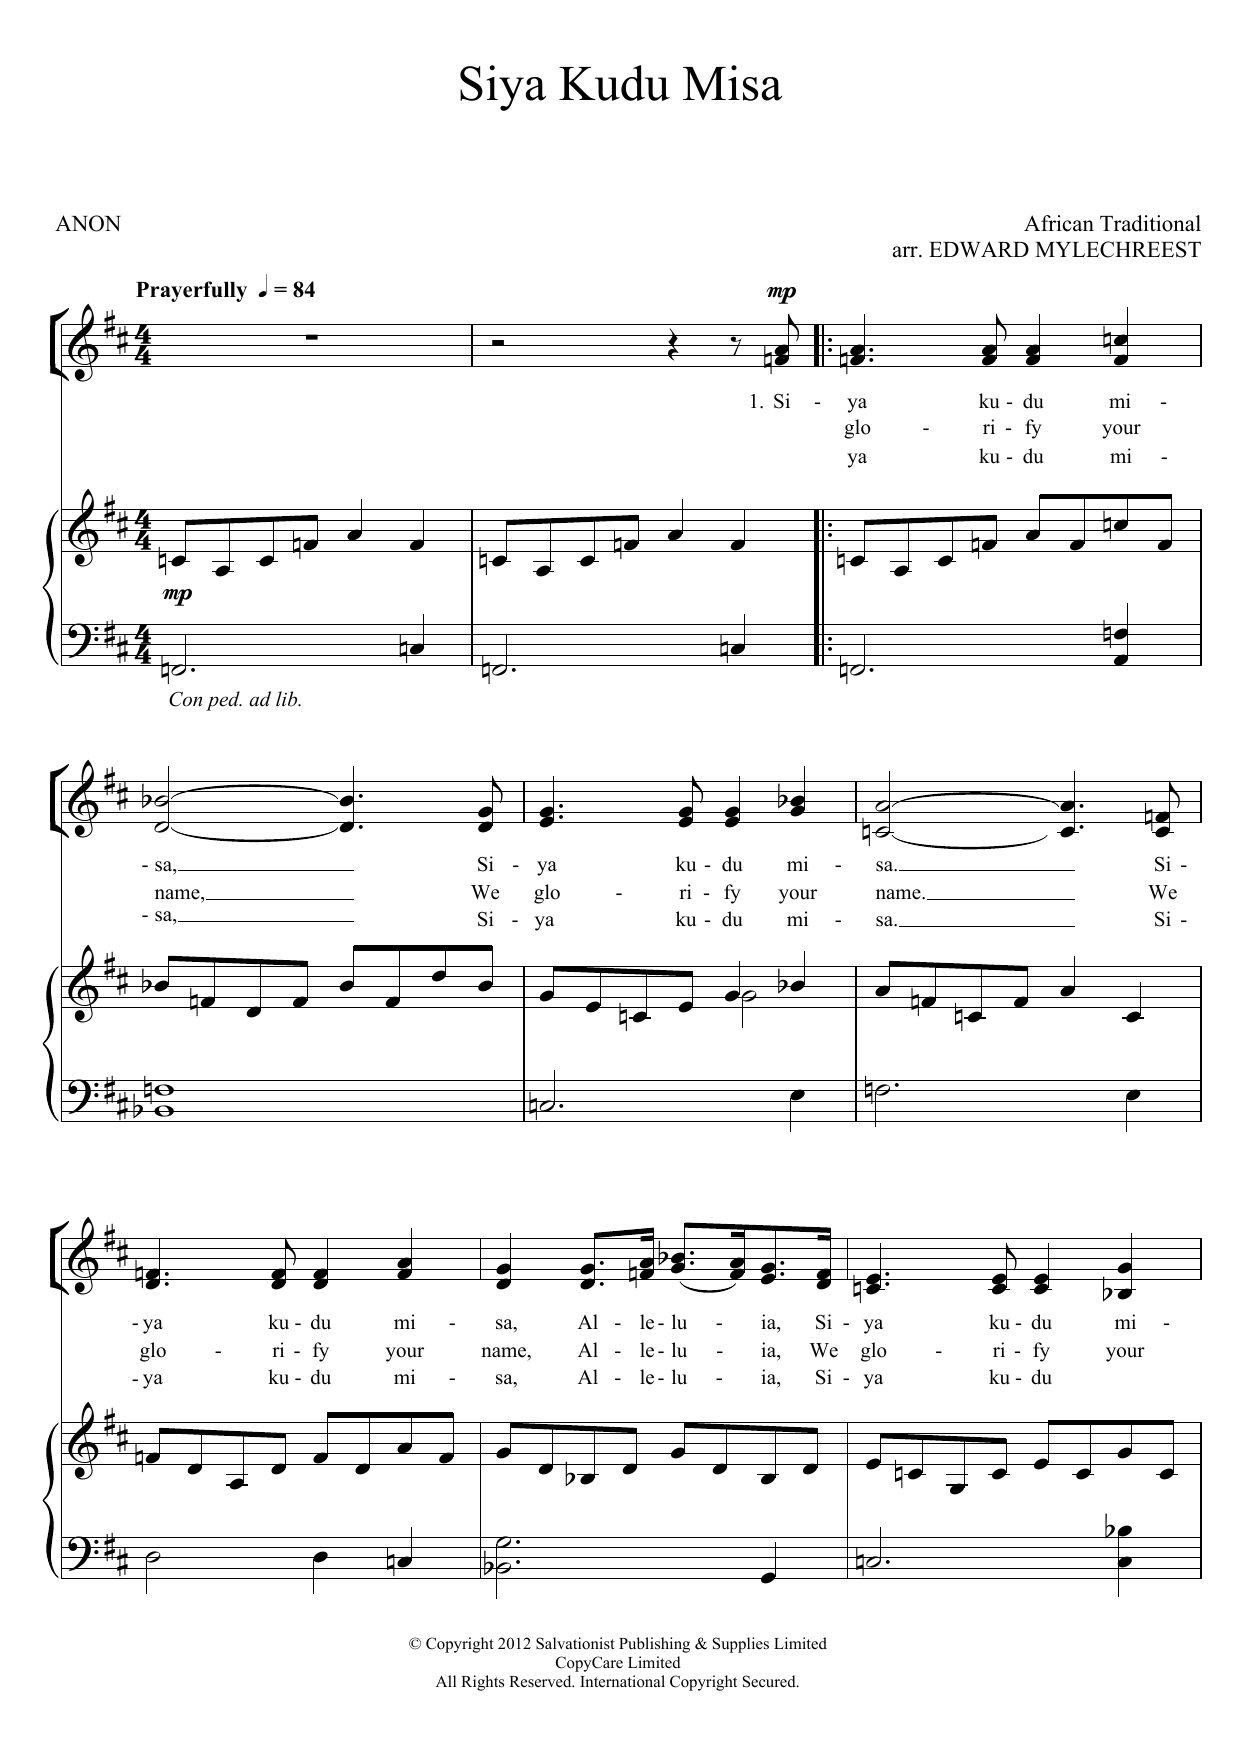 The Salvation Army Siya Kuda Misa Sheet Music Notes & Chords for Piano, Vocal & Guitar (Right-Hand Melody) - Download or Print PDF